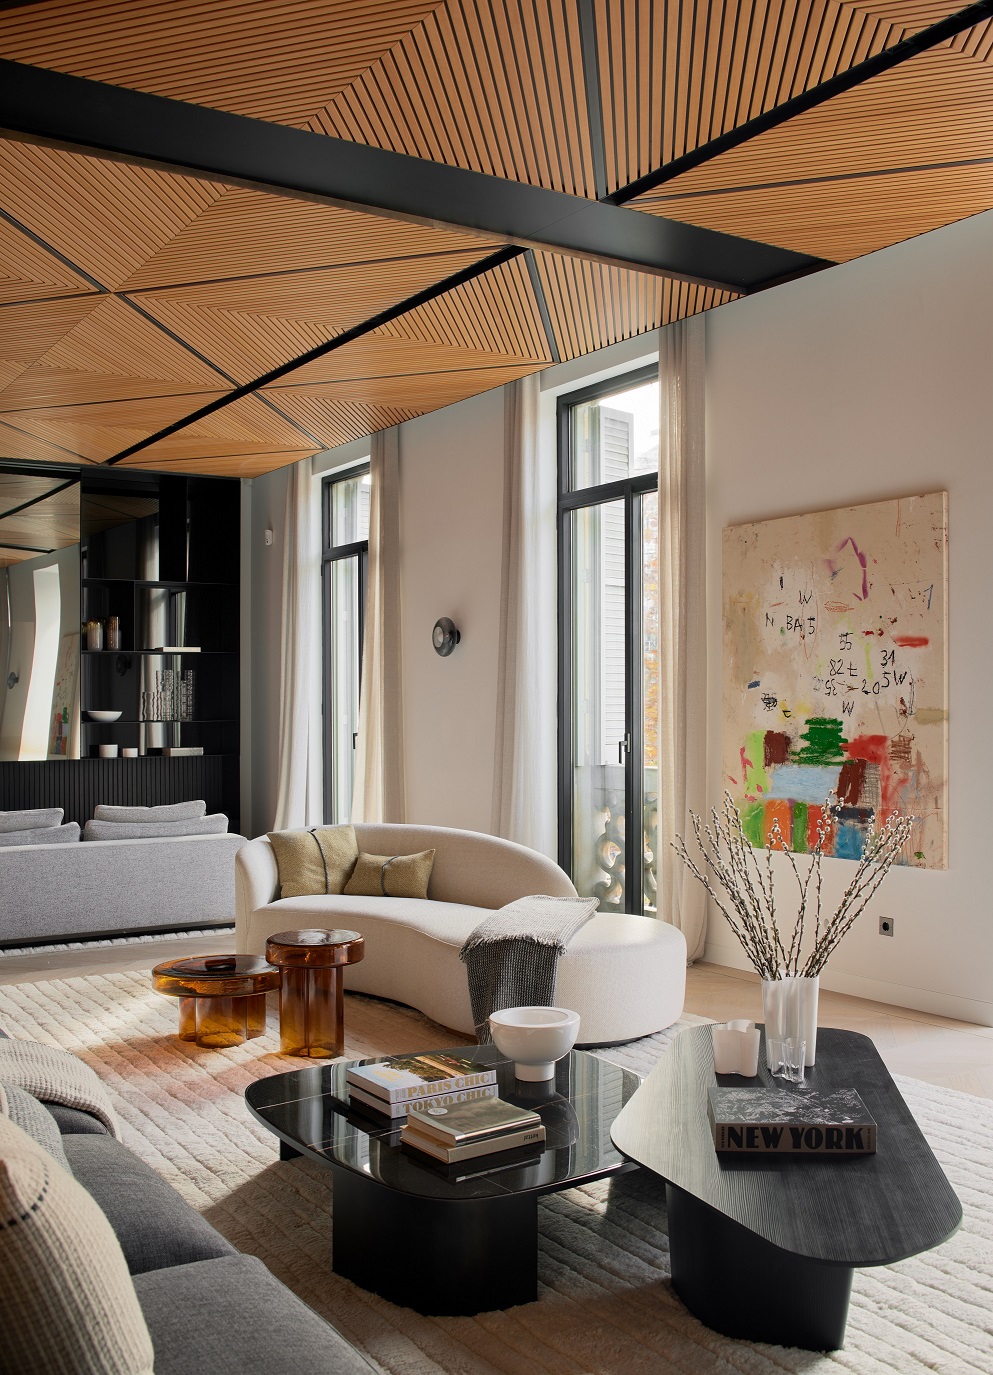 Paseo de Gracia Apartment LUV Studio Pol Viladoms Livingroom 6 - LUV Studio - Arquitectura y diseño - Barcelona